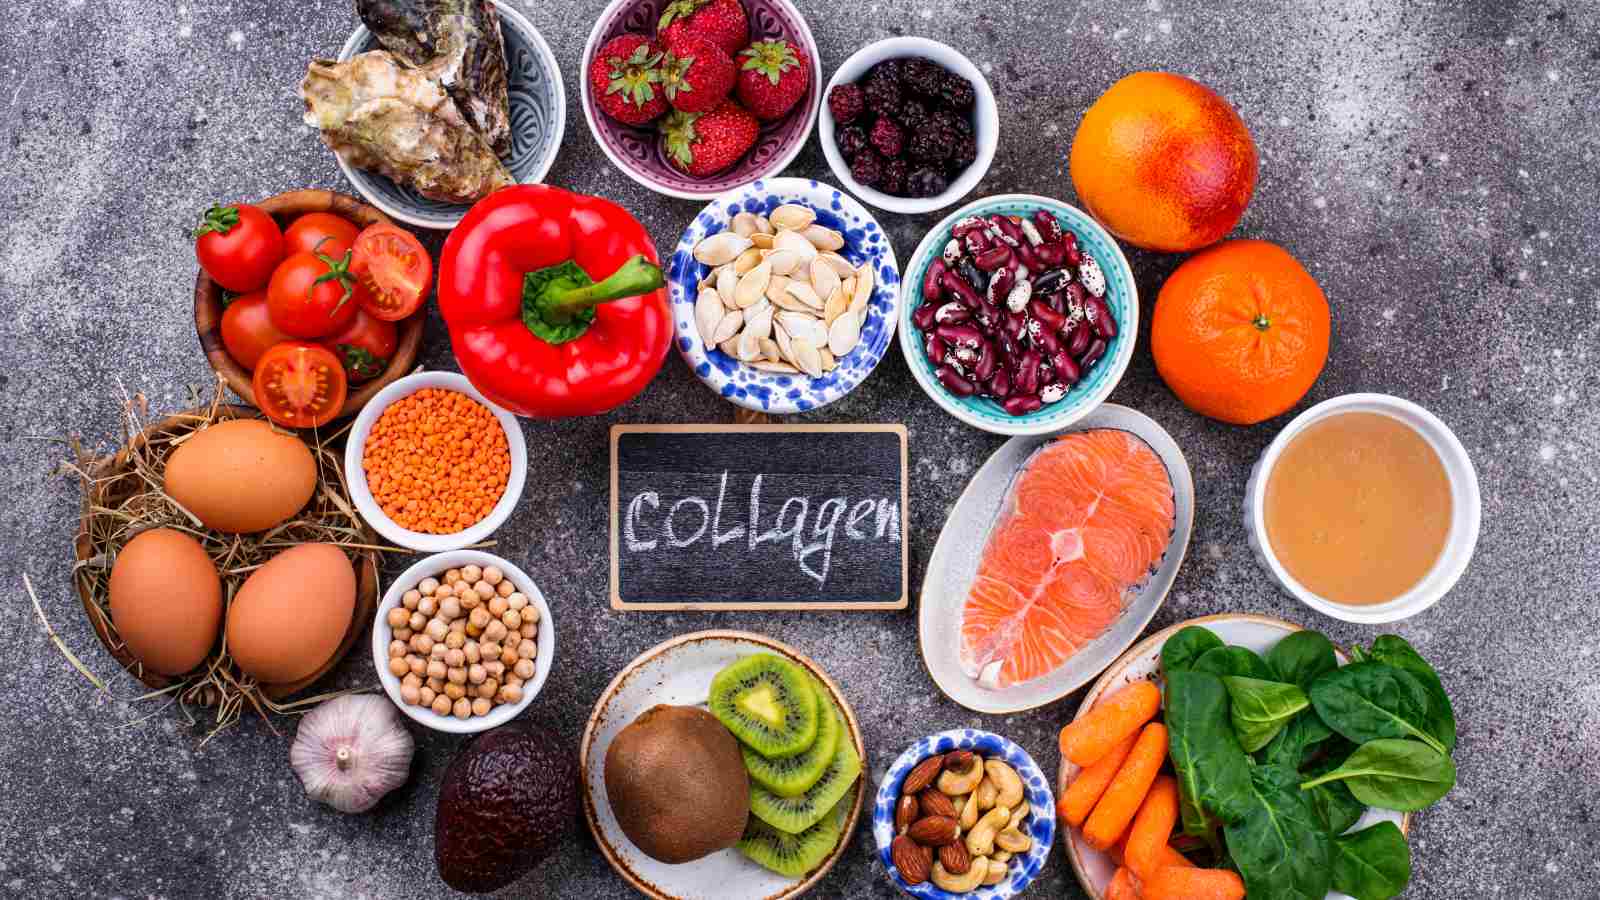 Tăng cường collagen qua thực phẩm hàng ngày